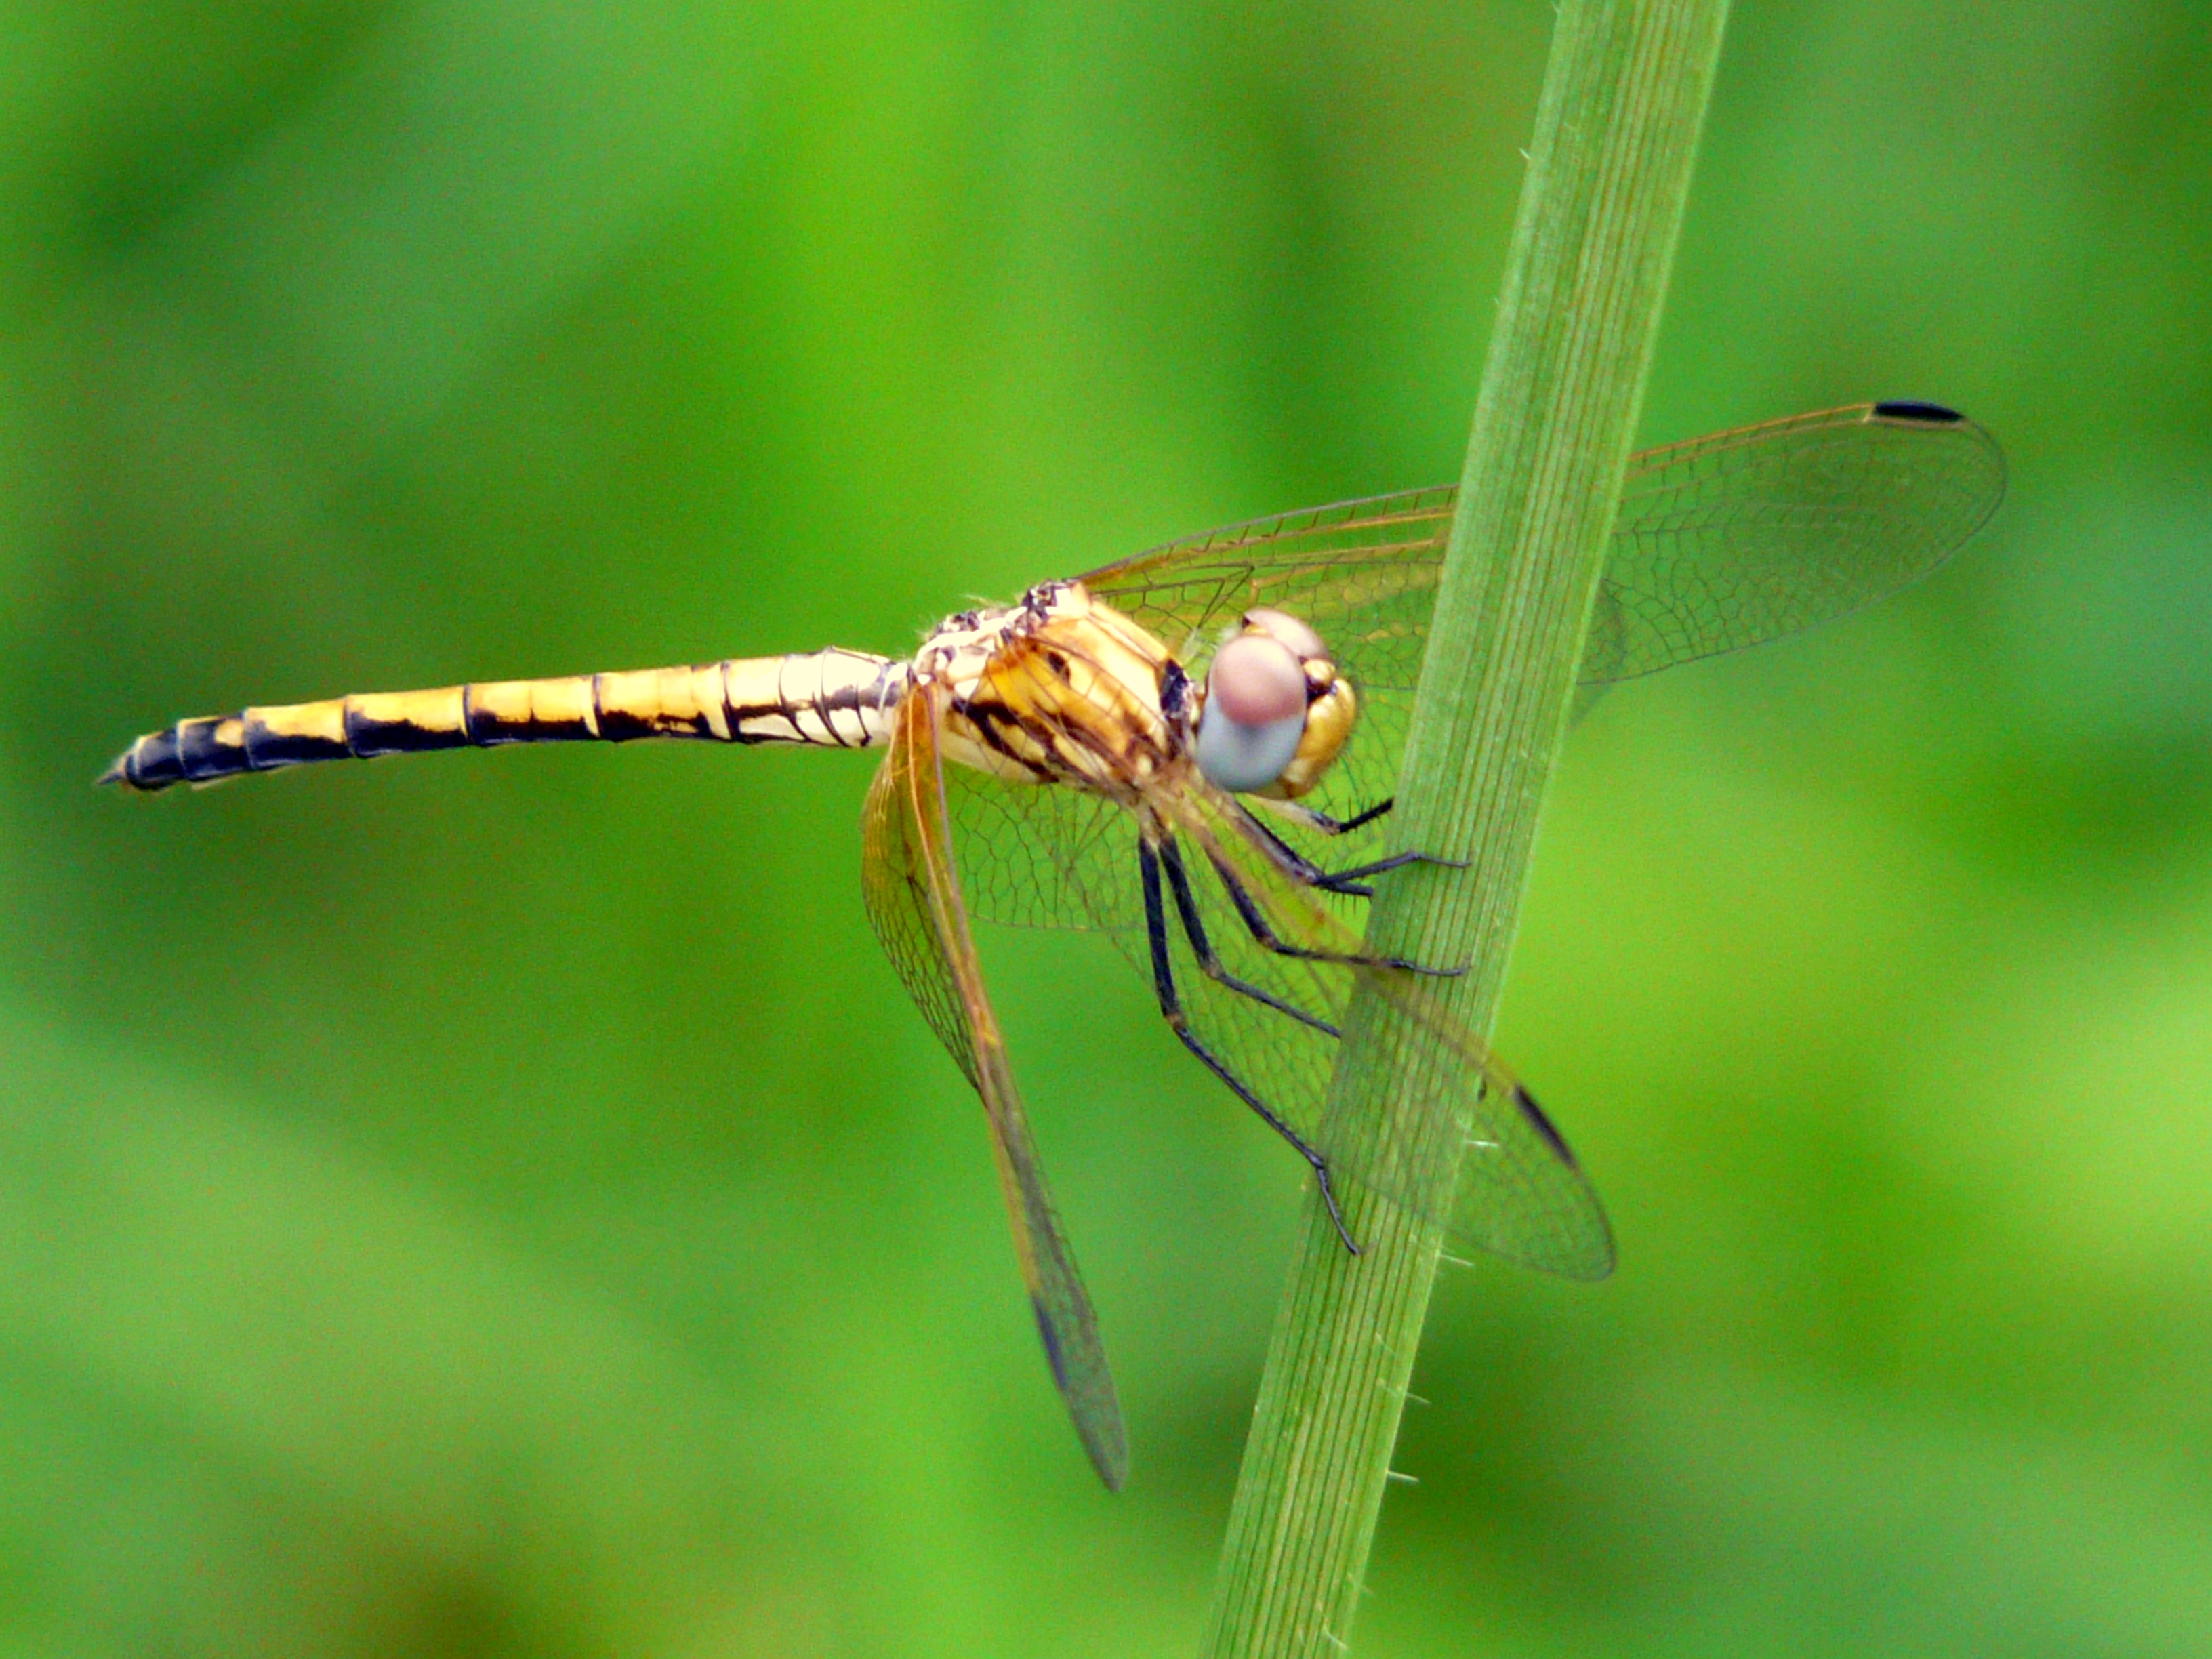 NaturePlus: ID Kenyan Dragonflies?